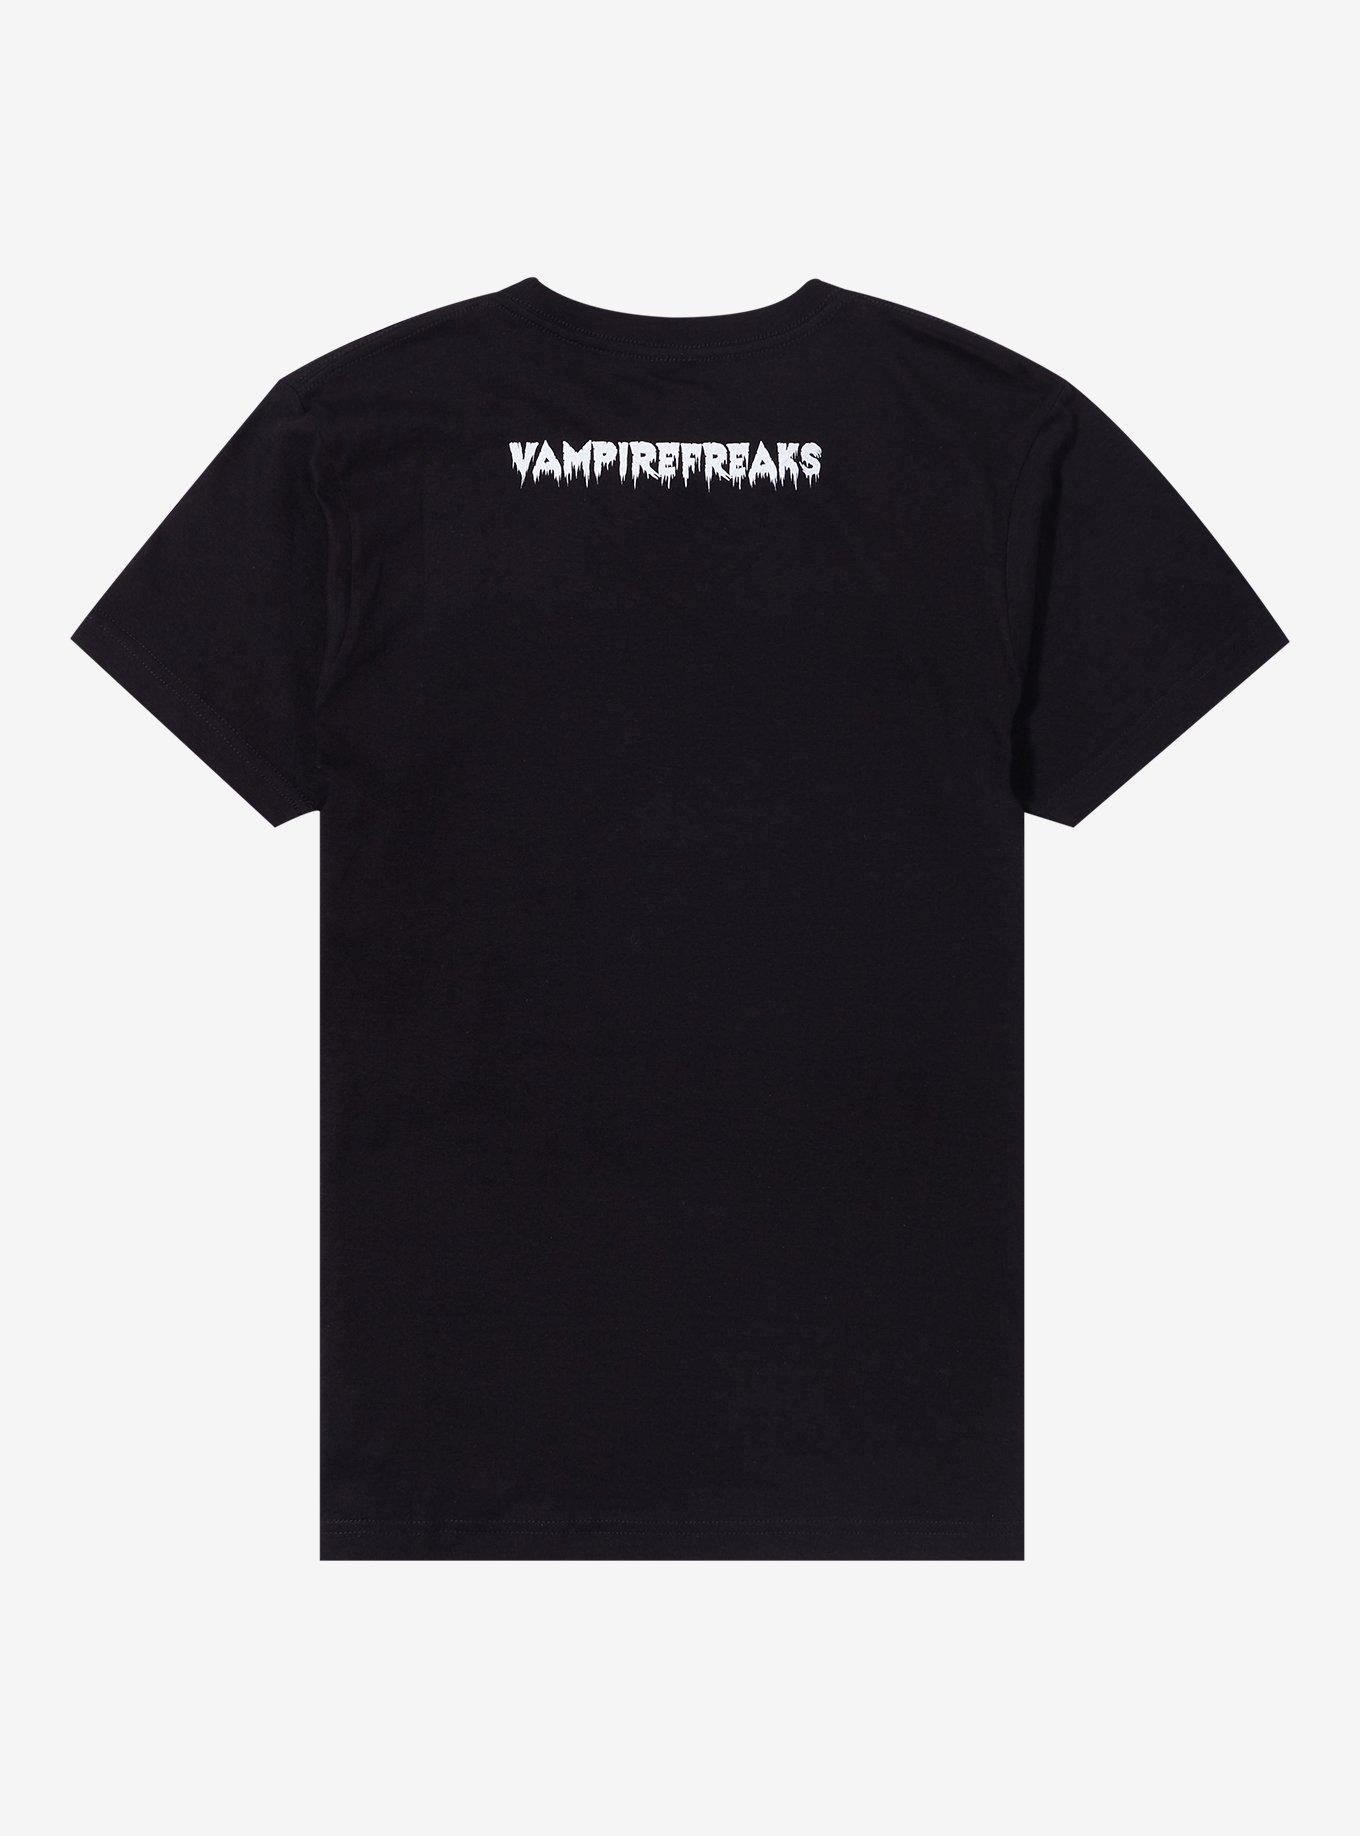 Vampire Freaks Howling Wolf T-Shirt, BLACK, alternate